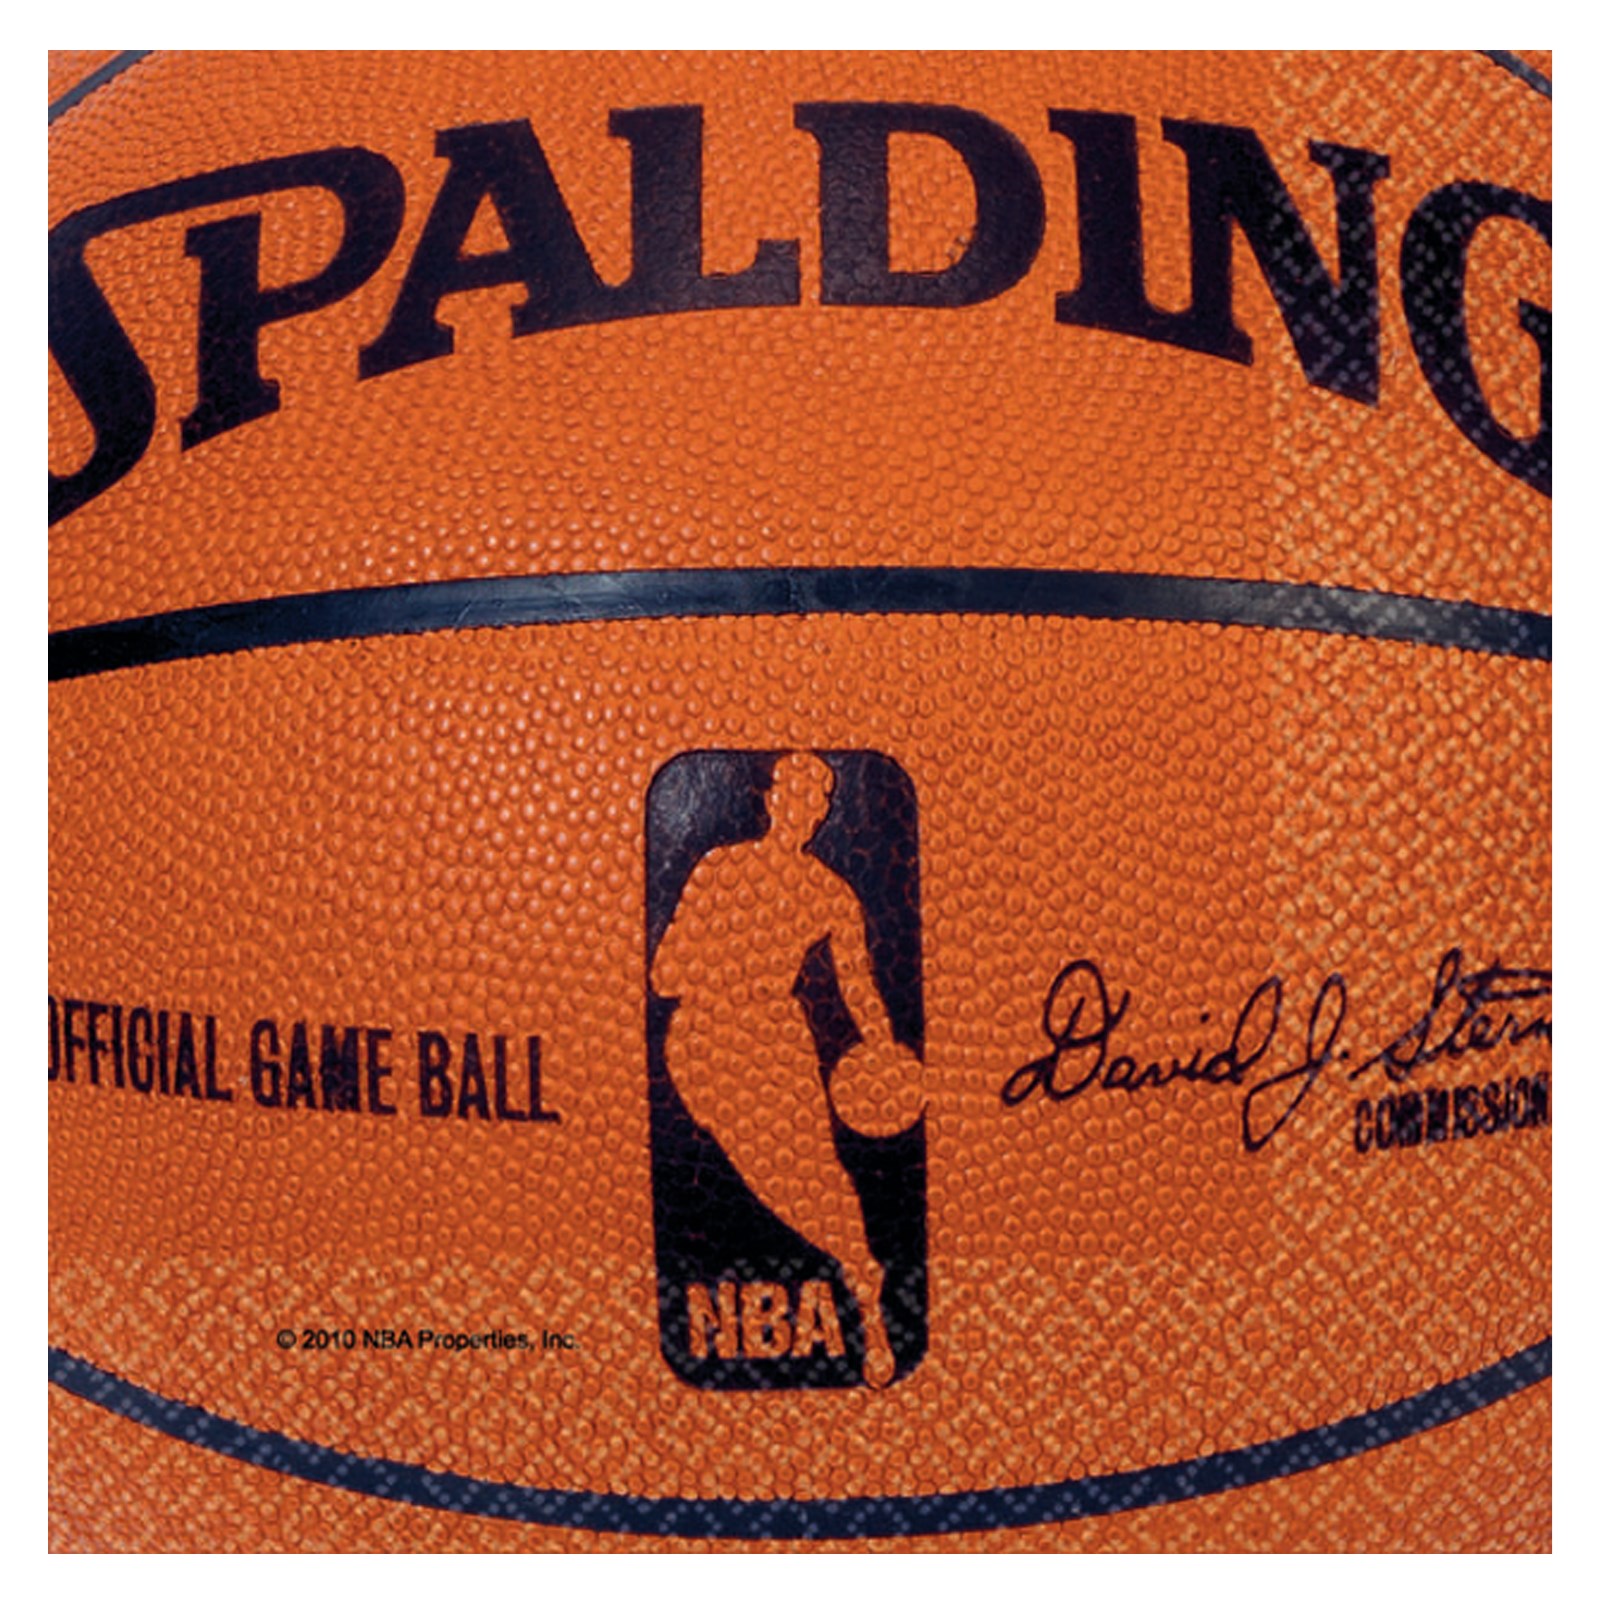 Spalding Basketball - Beverage Napkins 36 count